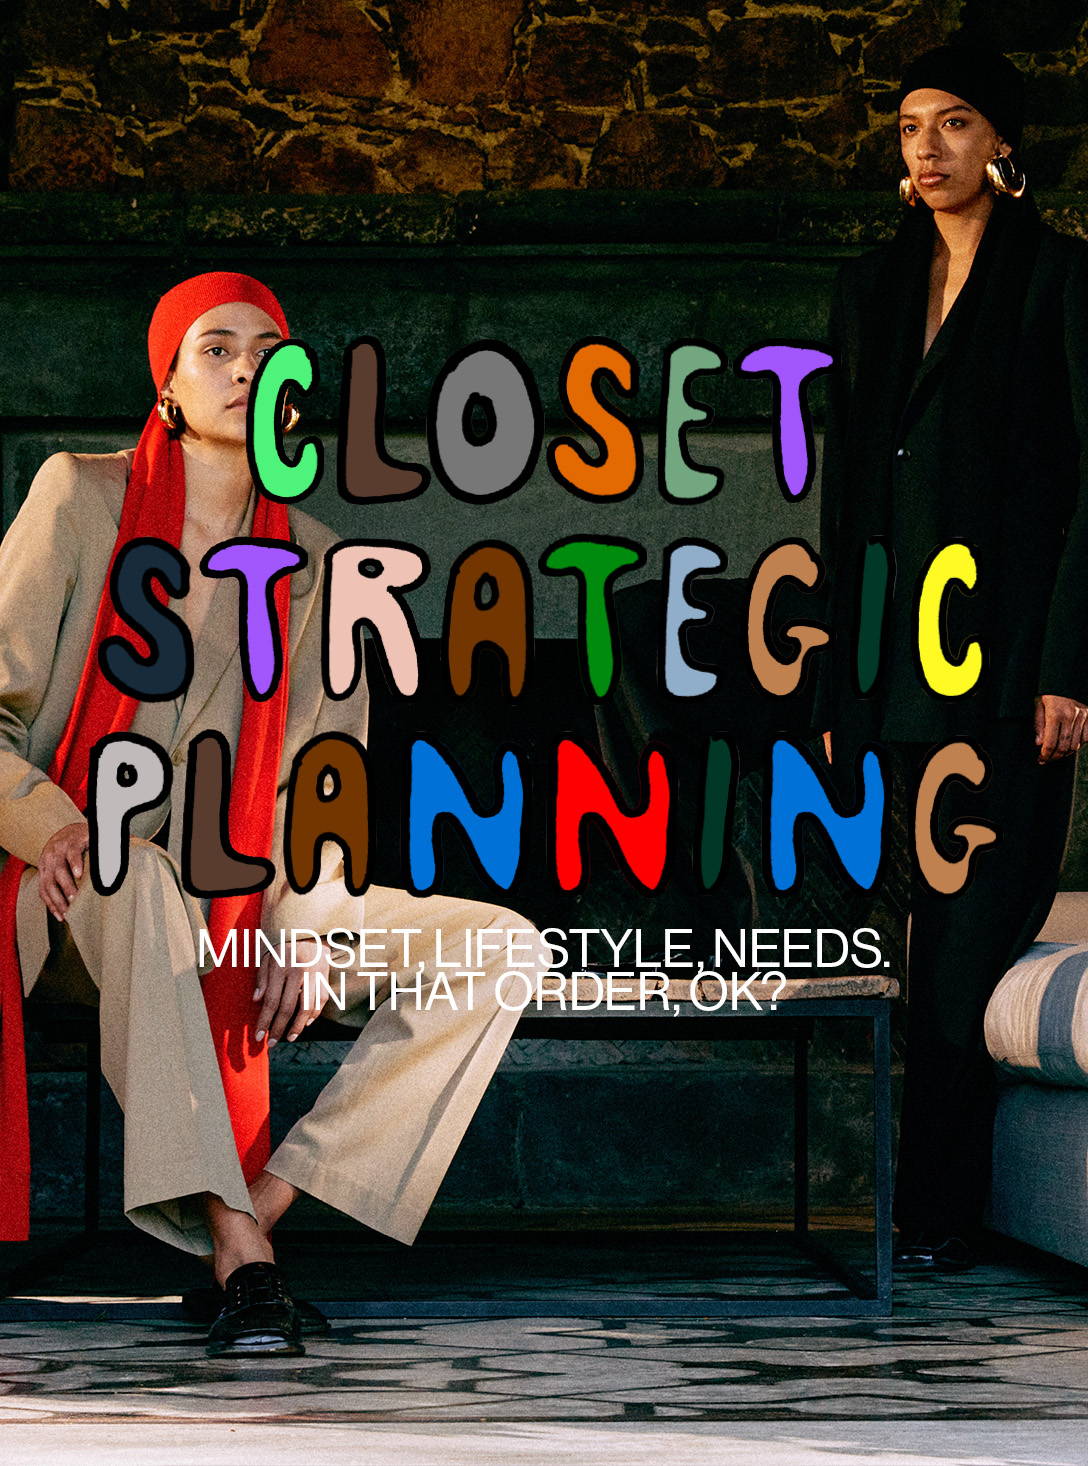 Closet Strategic Planning